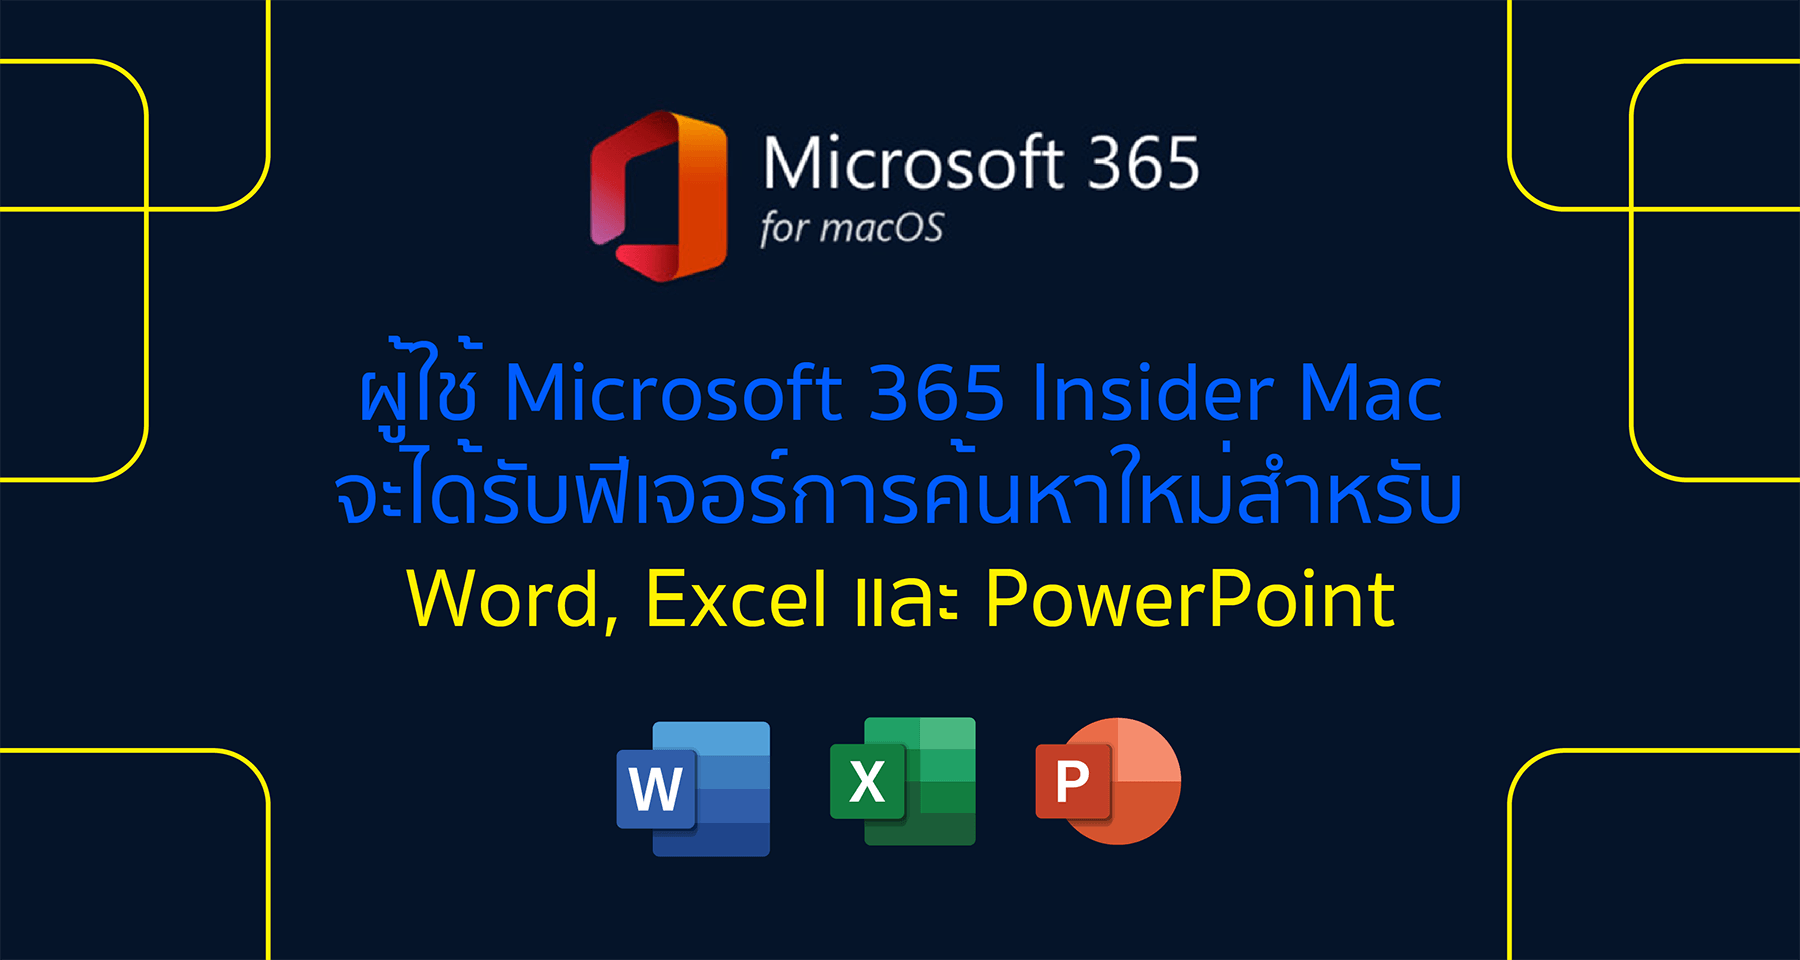 ผู้ใช้ Microsoft 365 Insider Mac จะได้รับฟีเจอร์การค้นหาใหม่สำหรับ Word, Excel และ PowerPoint